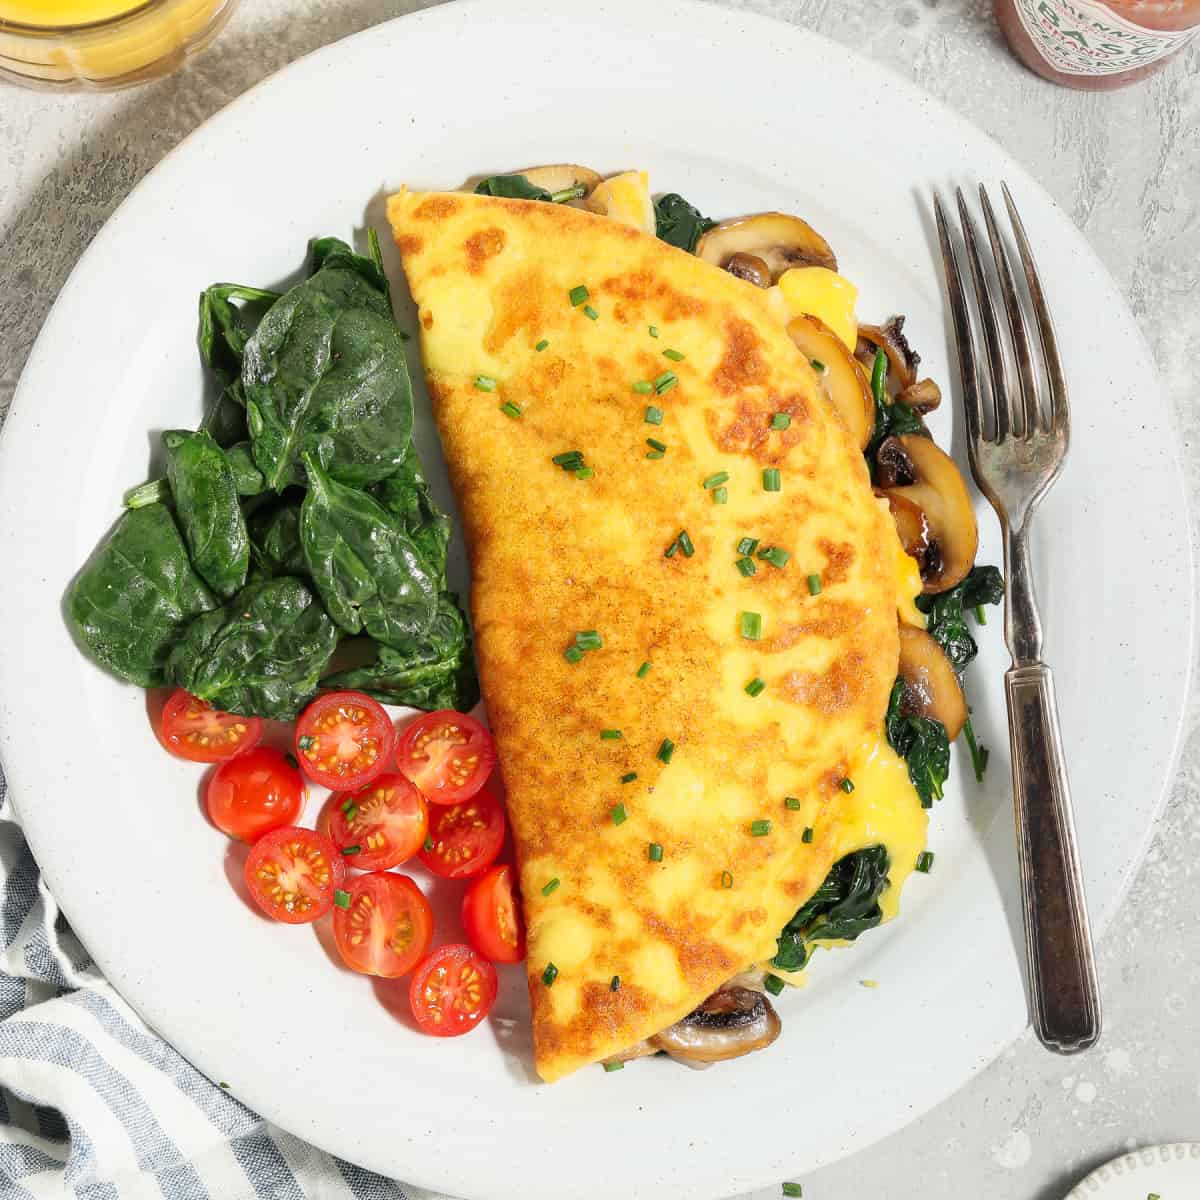 https://veganhuggs.com/wp-content/uploads/2021/09/just-egg-omelette-square-crop.jpg